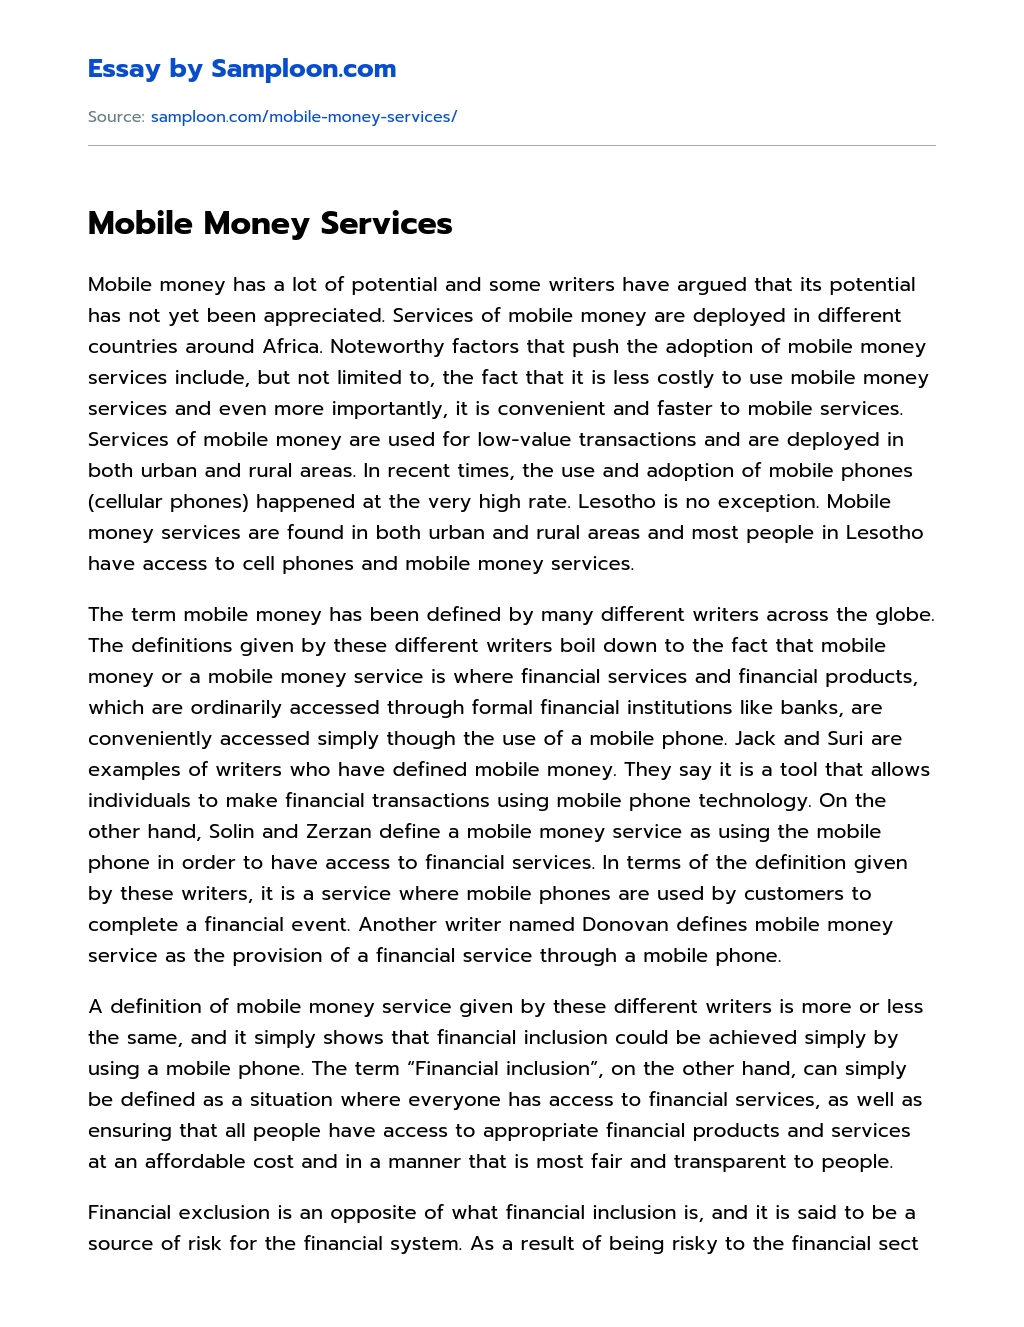 Mobile Money Services essay